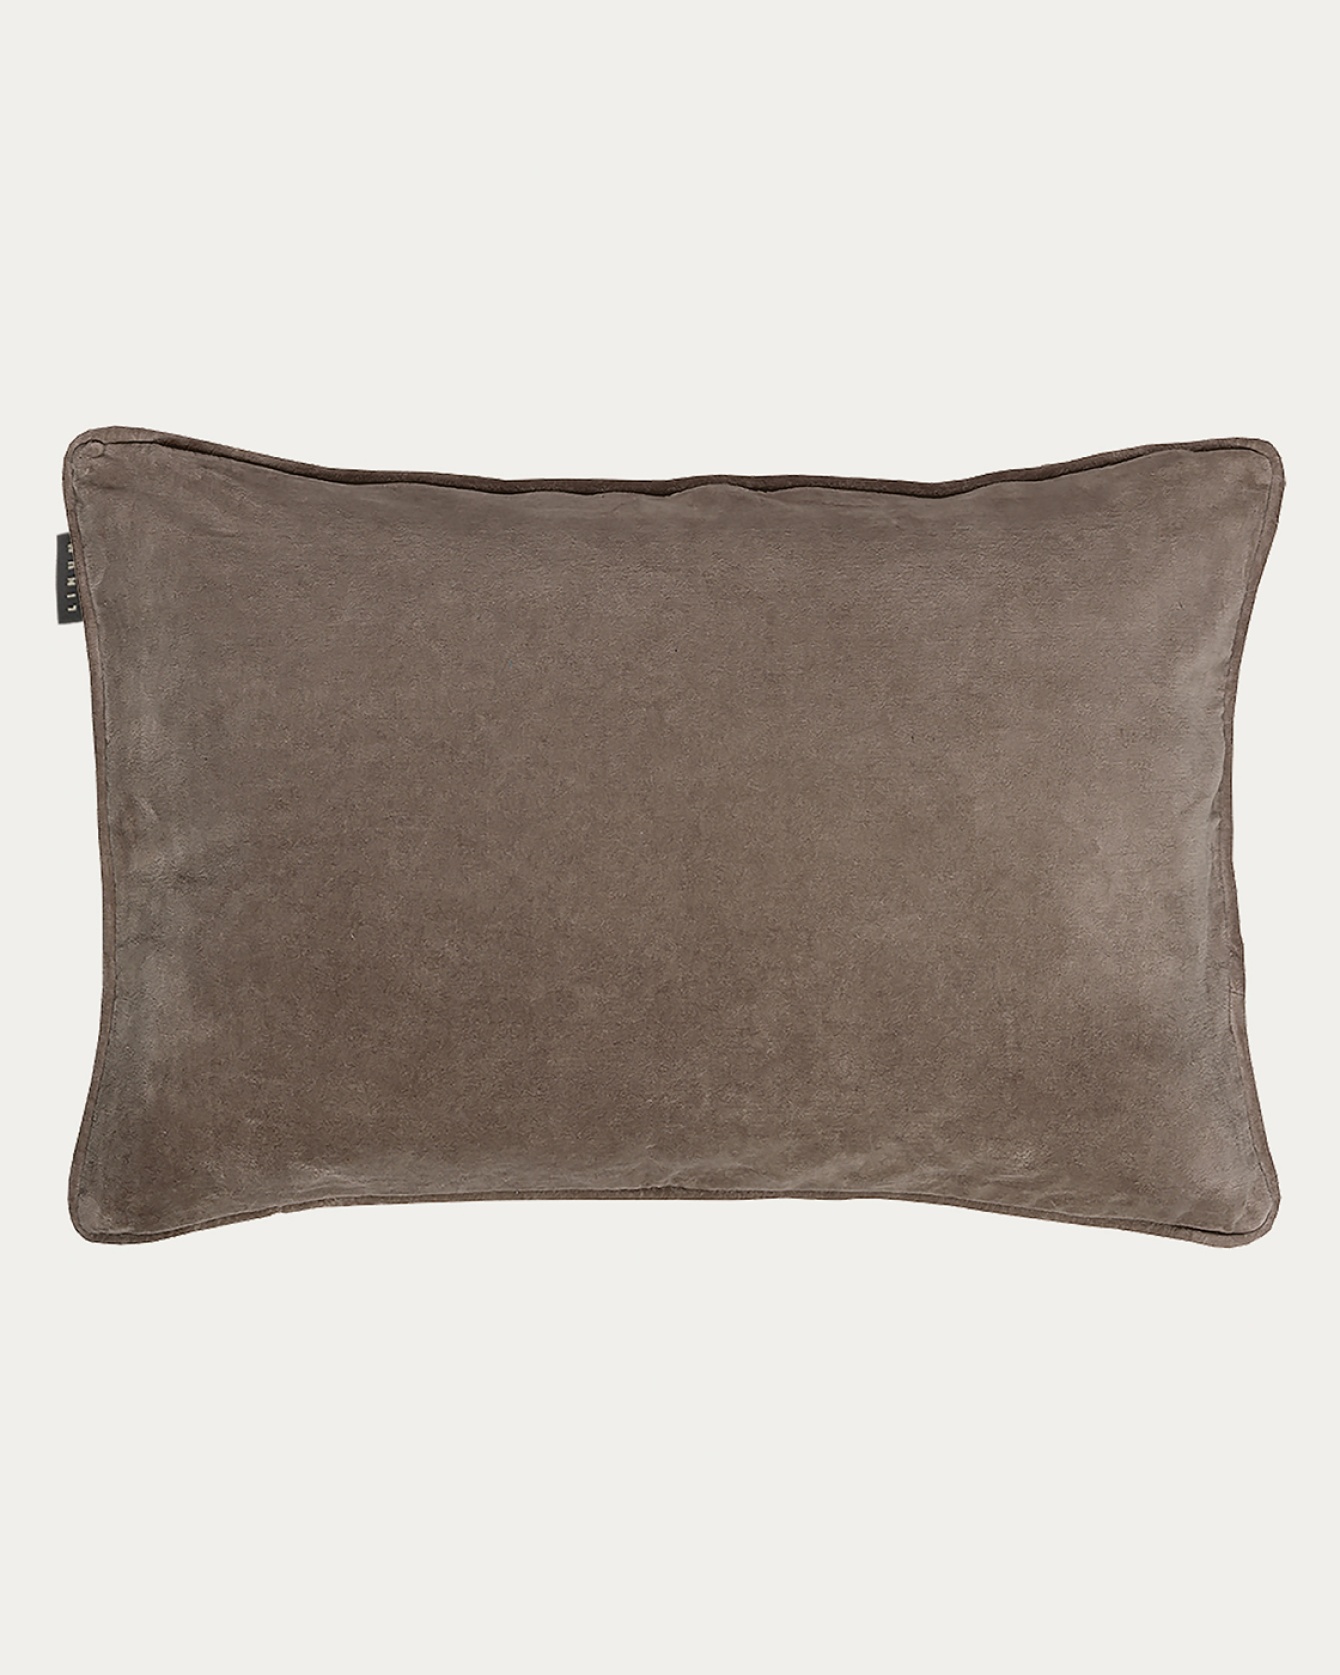 PAOLO Cushion cover 40x60 cm Mole brown